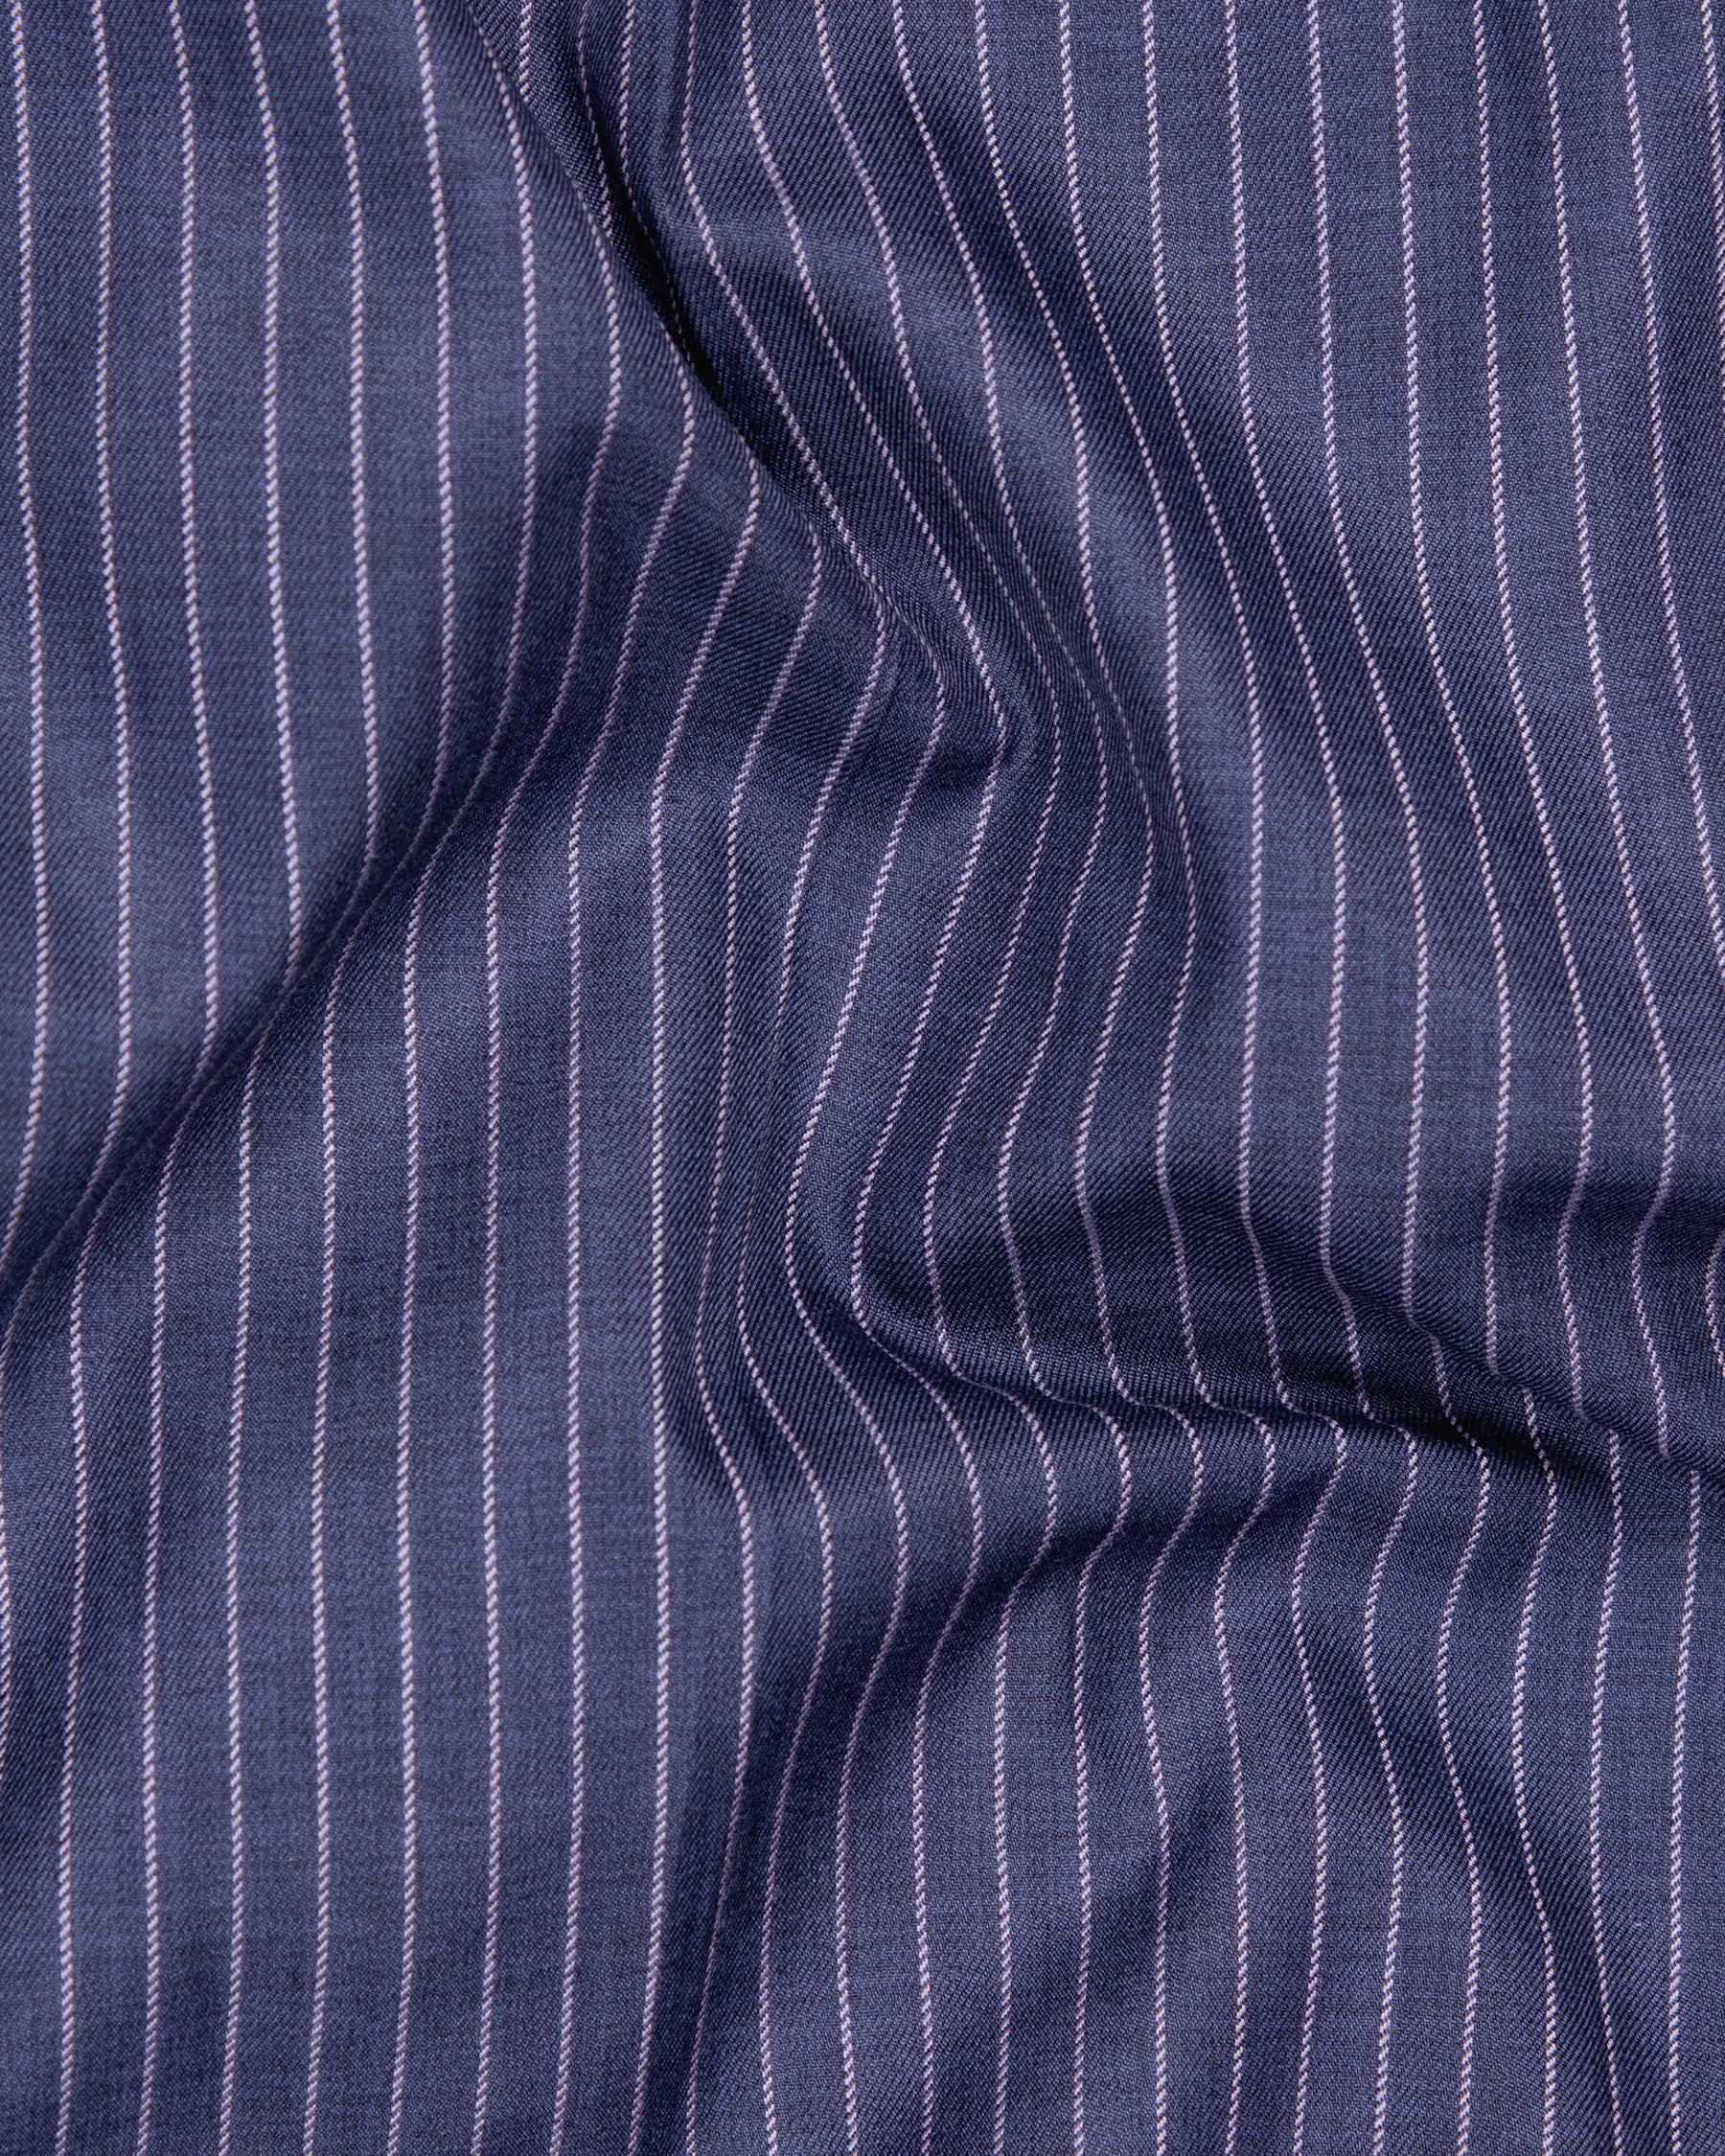 Martinique Blue with Prelude Striped Premium Cotton Waistcoat